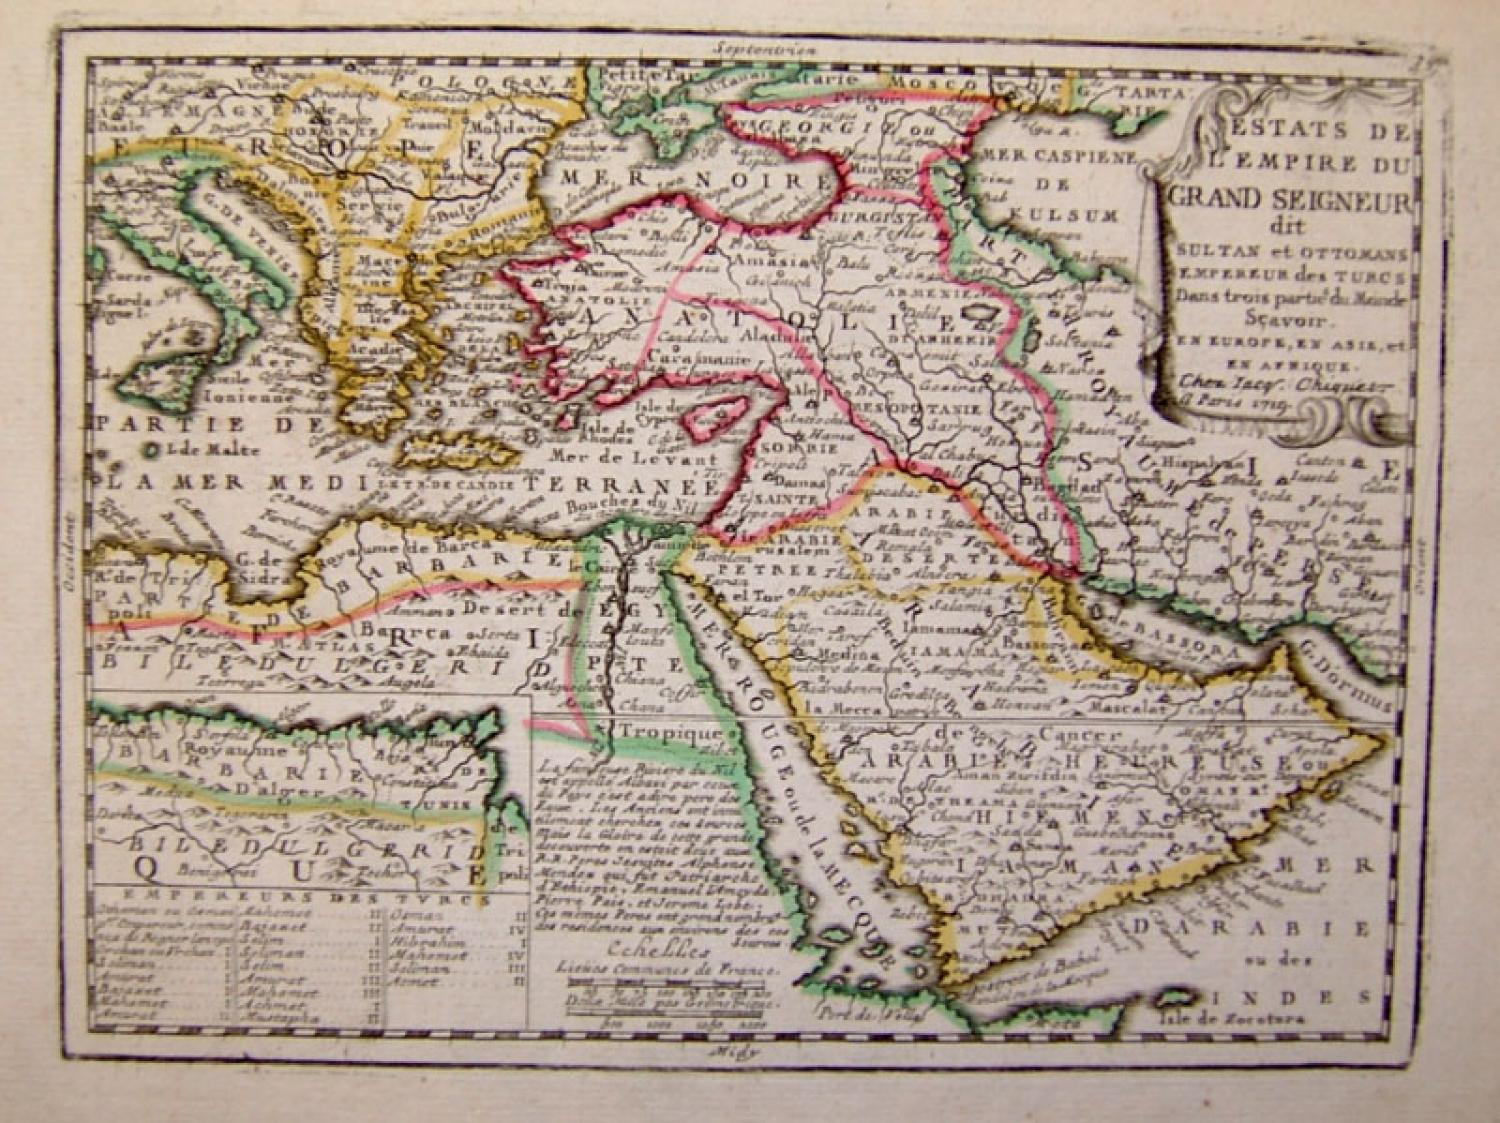 SOLD Estats de L'empire du Grand Seigneur dit Sultan et Ottomans Empereur des Turcs